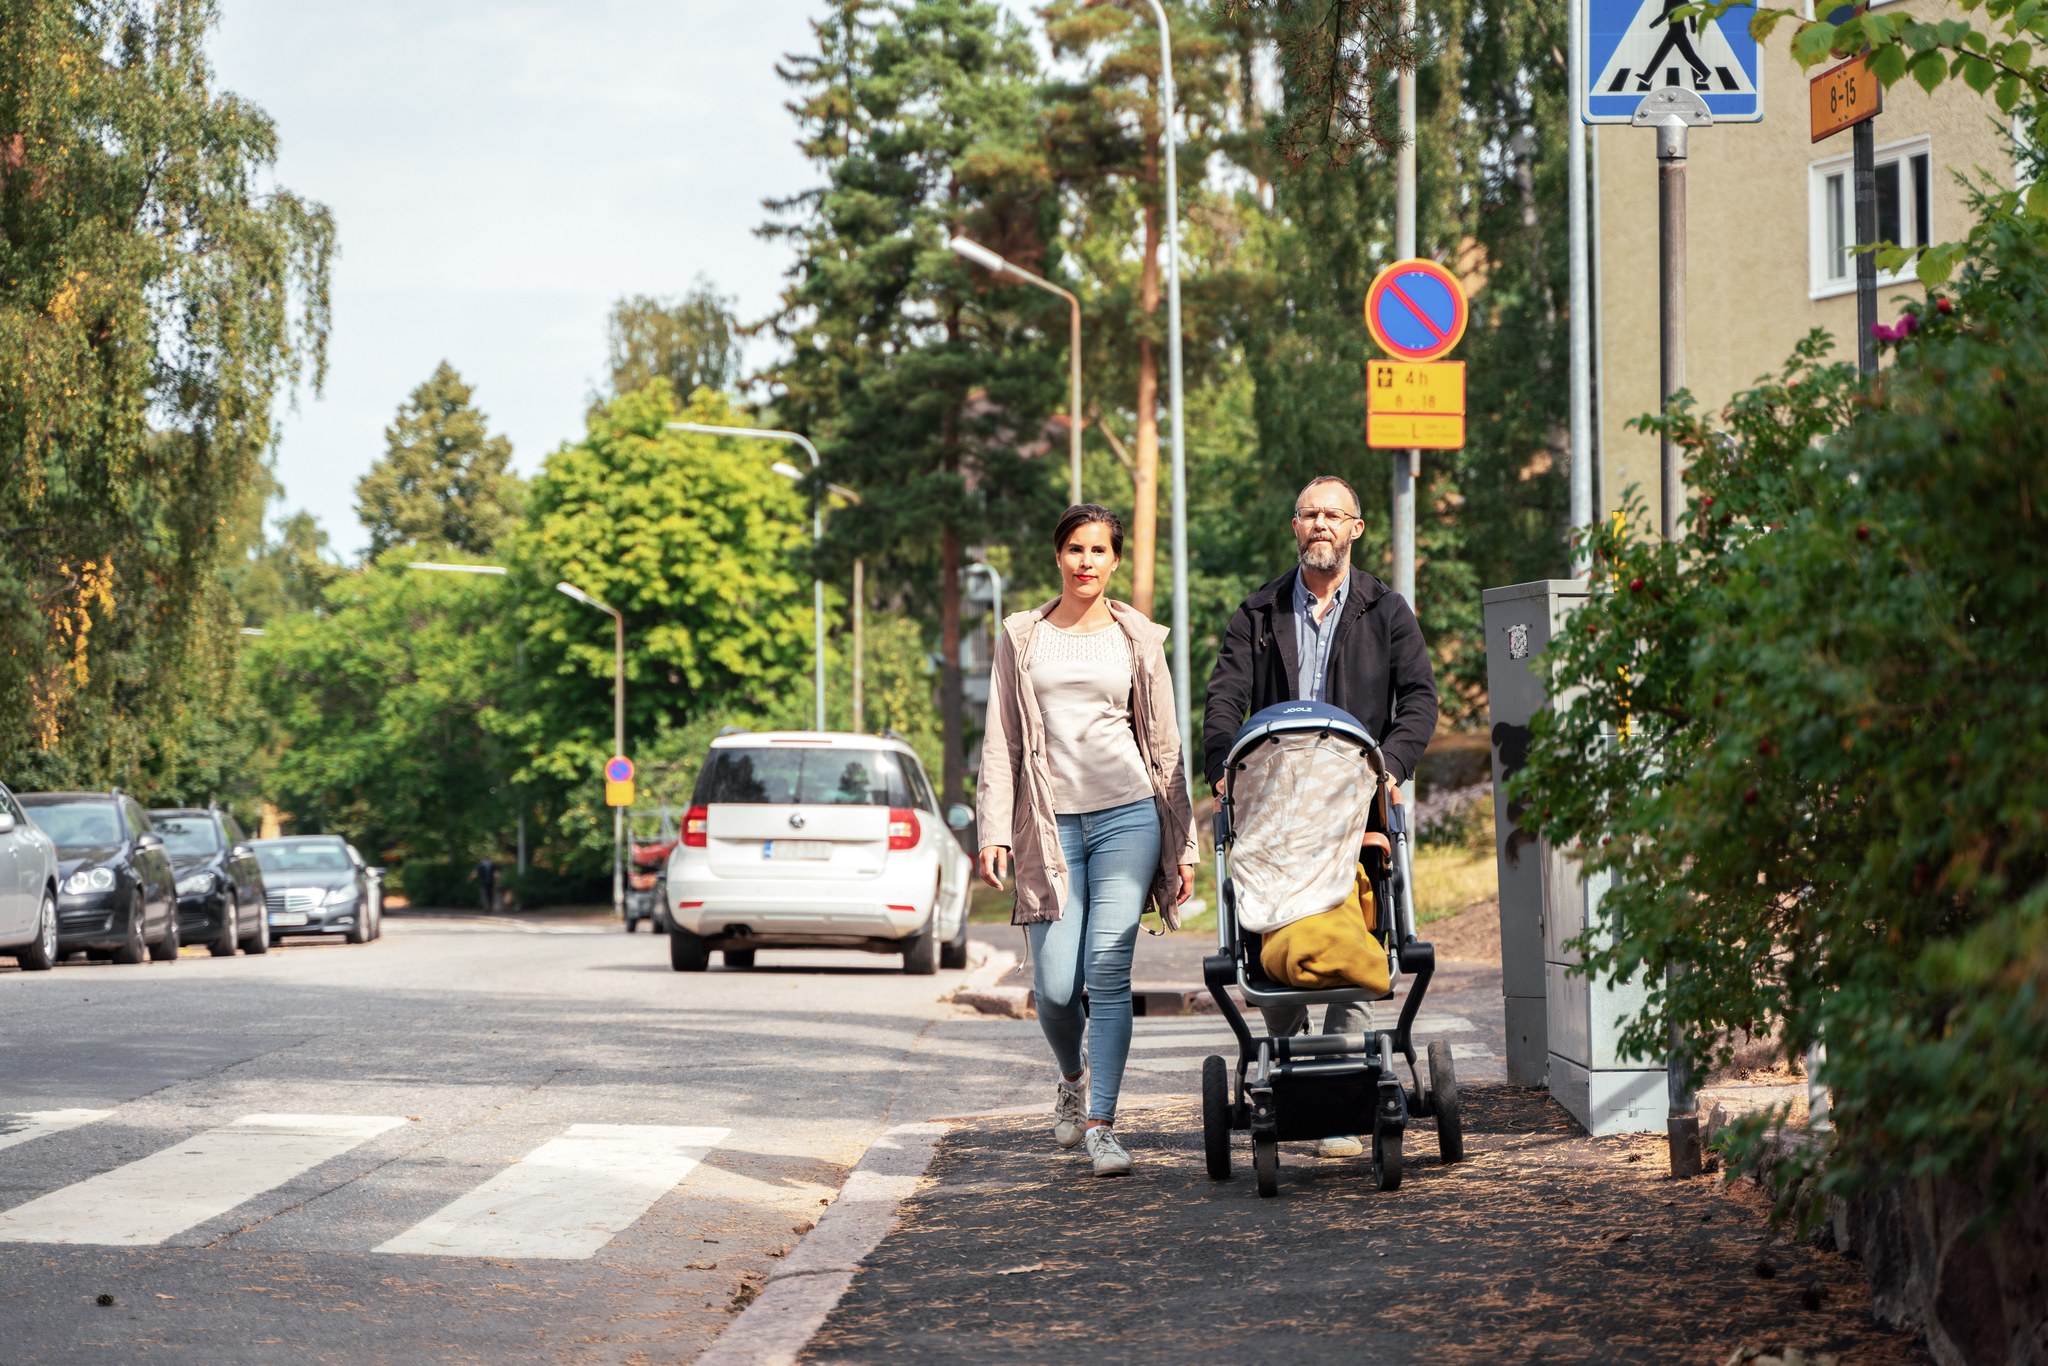 A family on a walk on sunny street